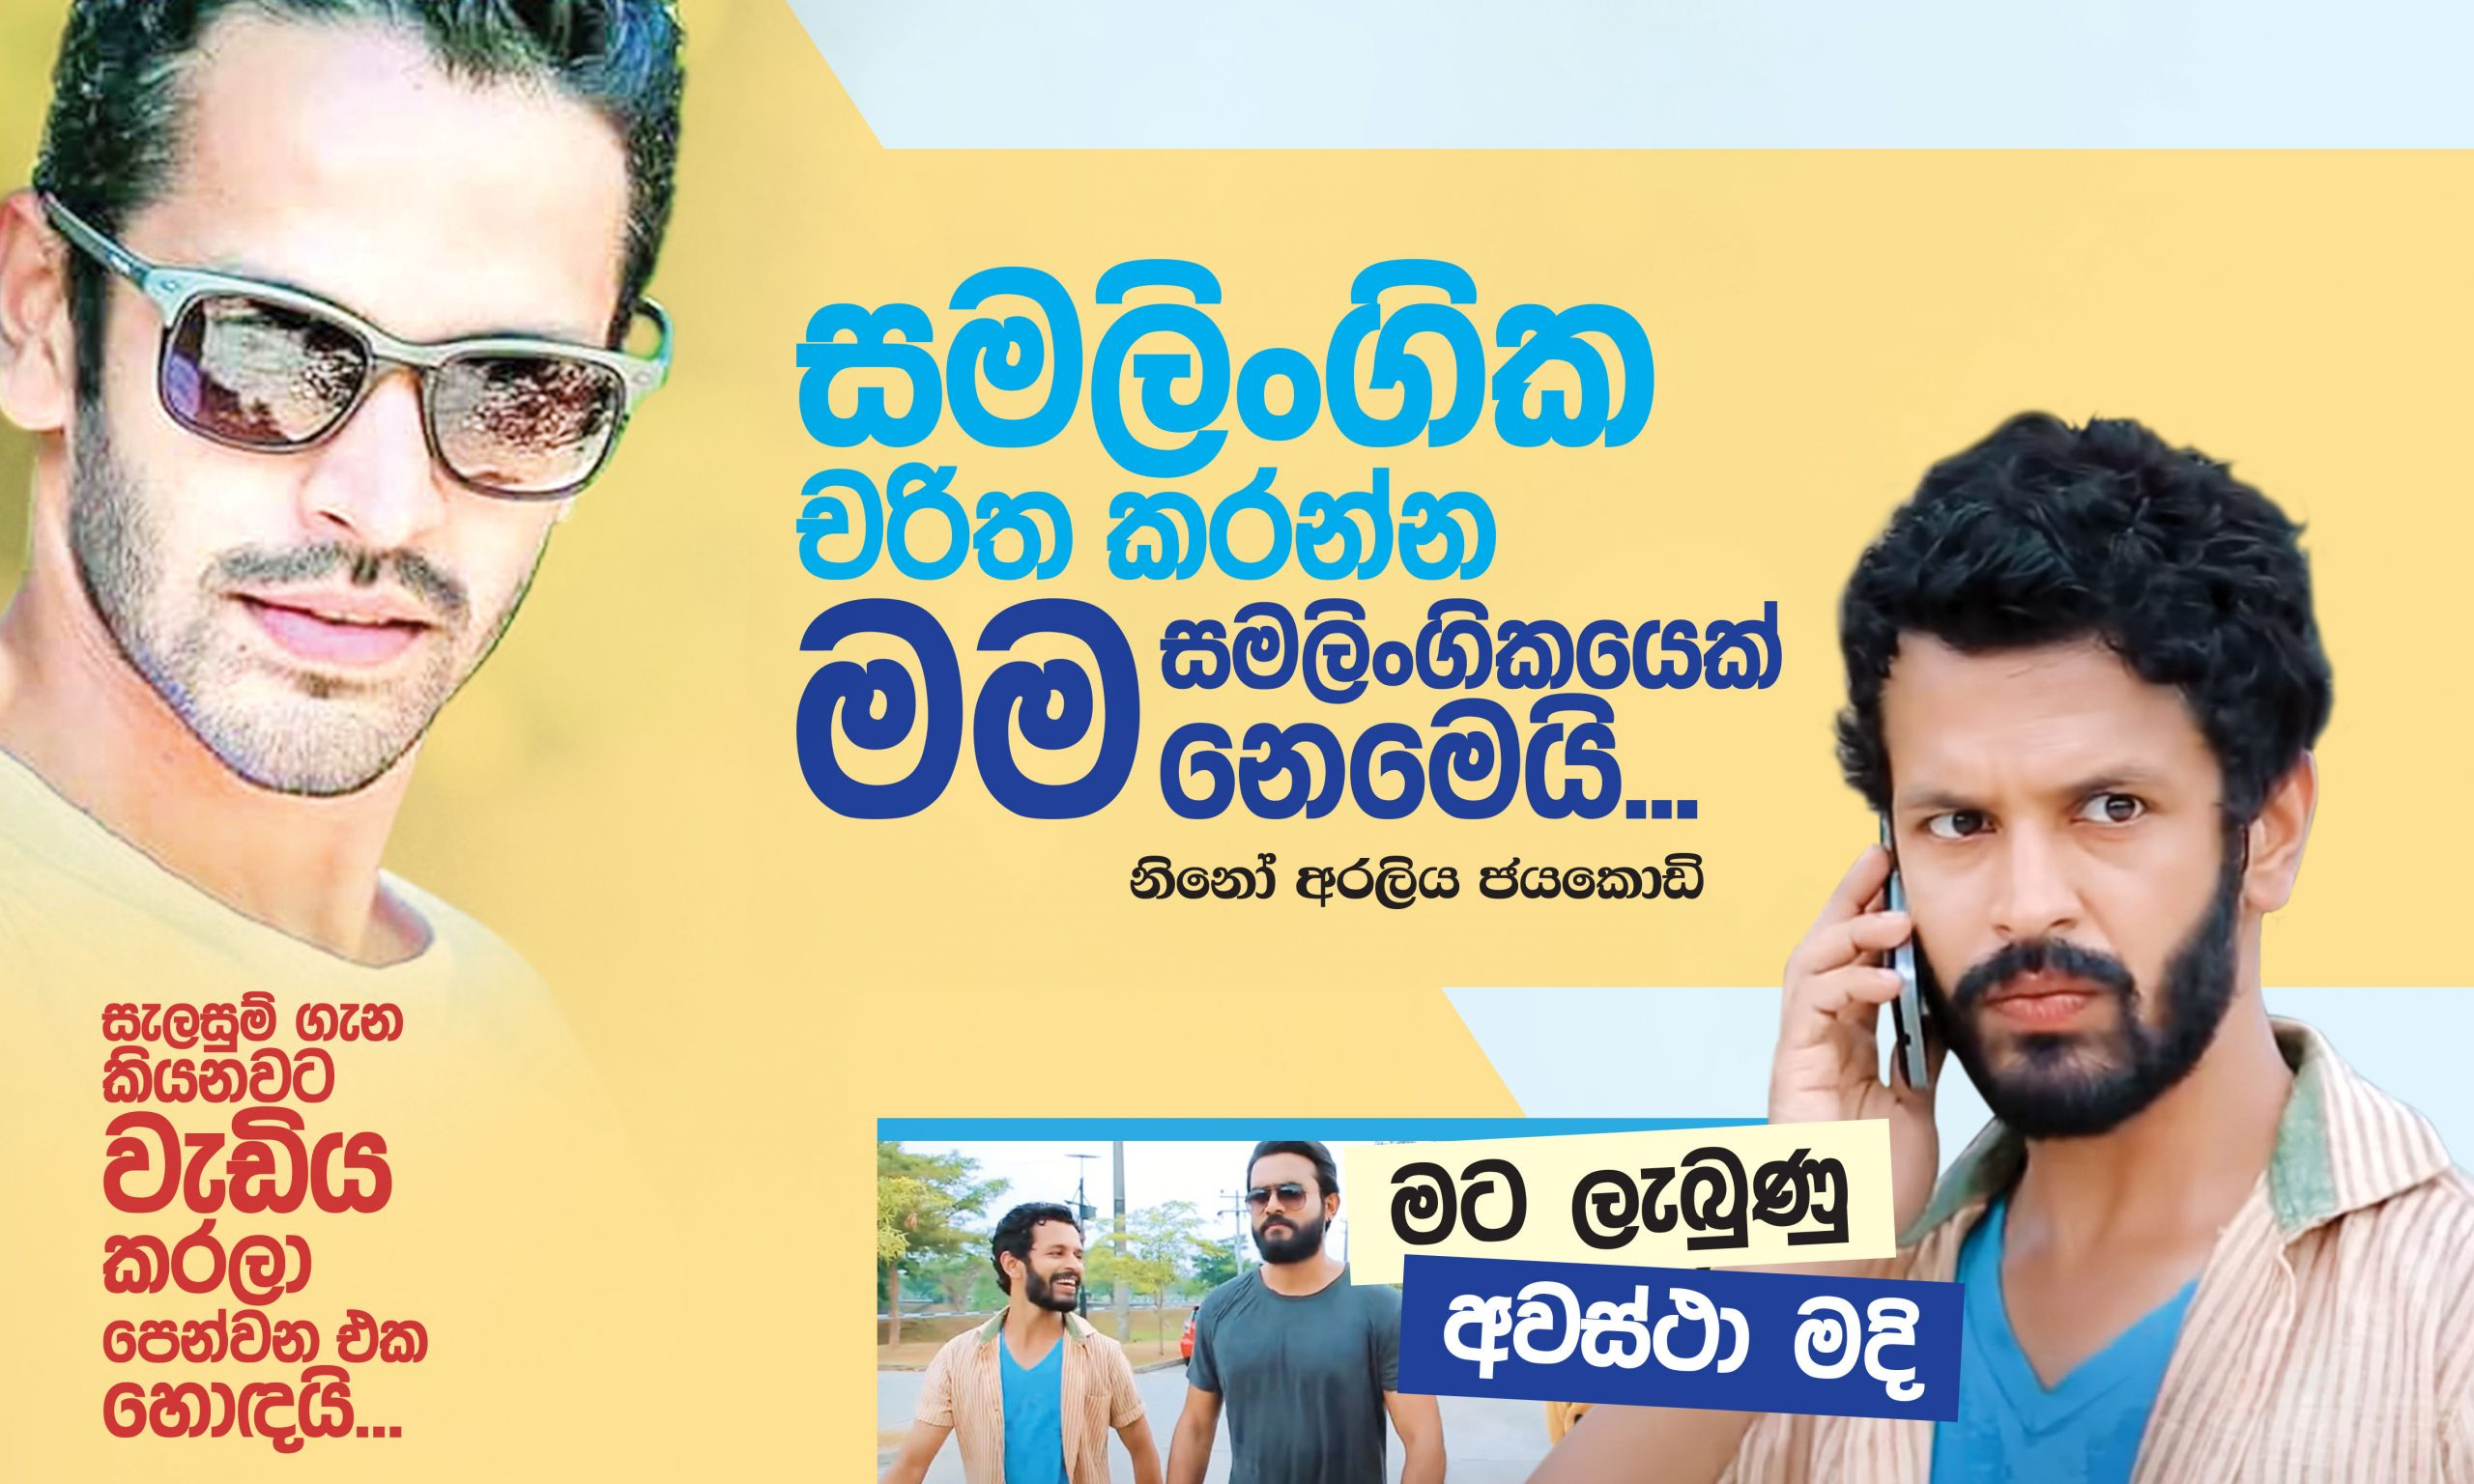 සමලිංගික චරිත කරන්න මම සමලිංගිකයෙක් නෙමෙයි - Mawratanews February In Sinhala Months